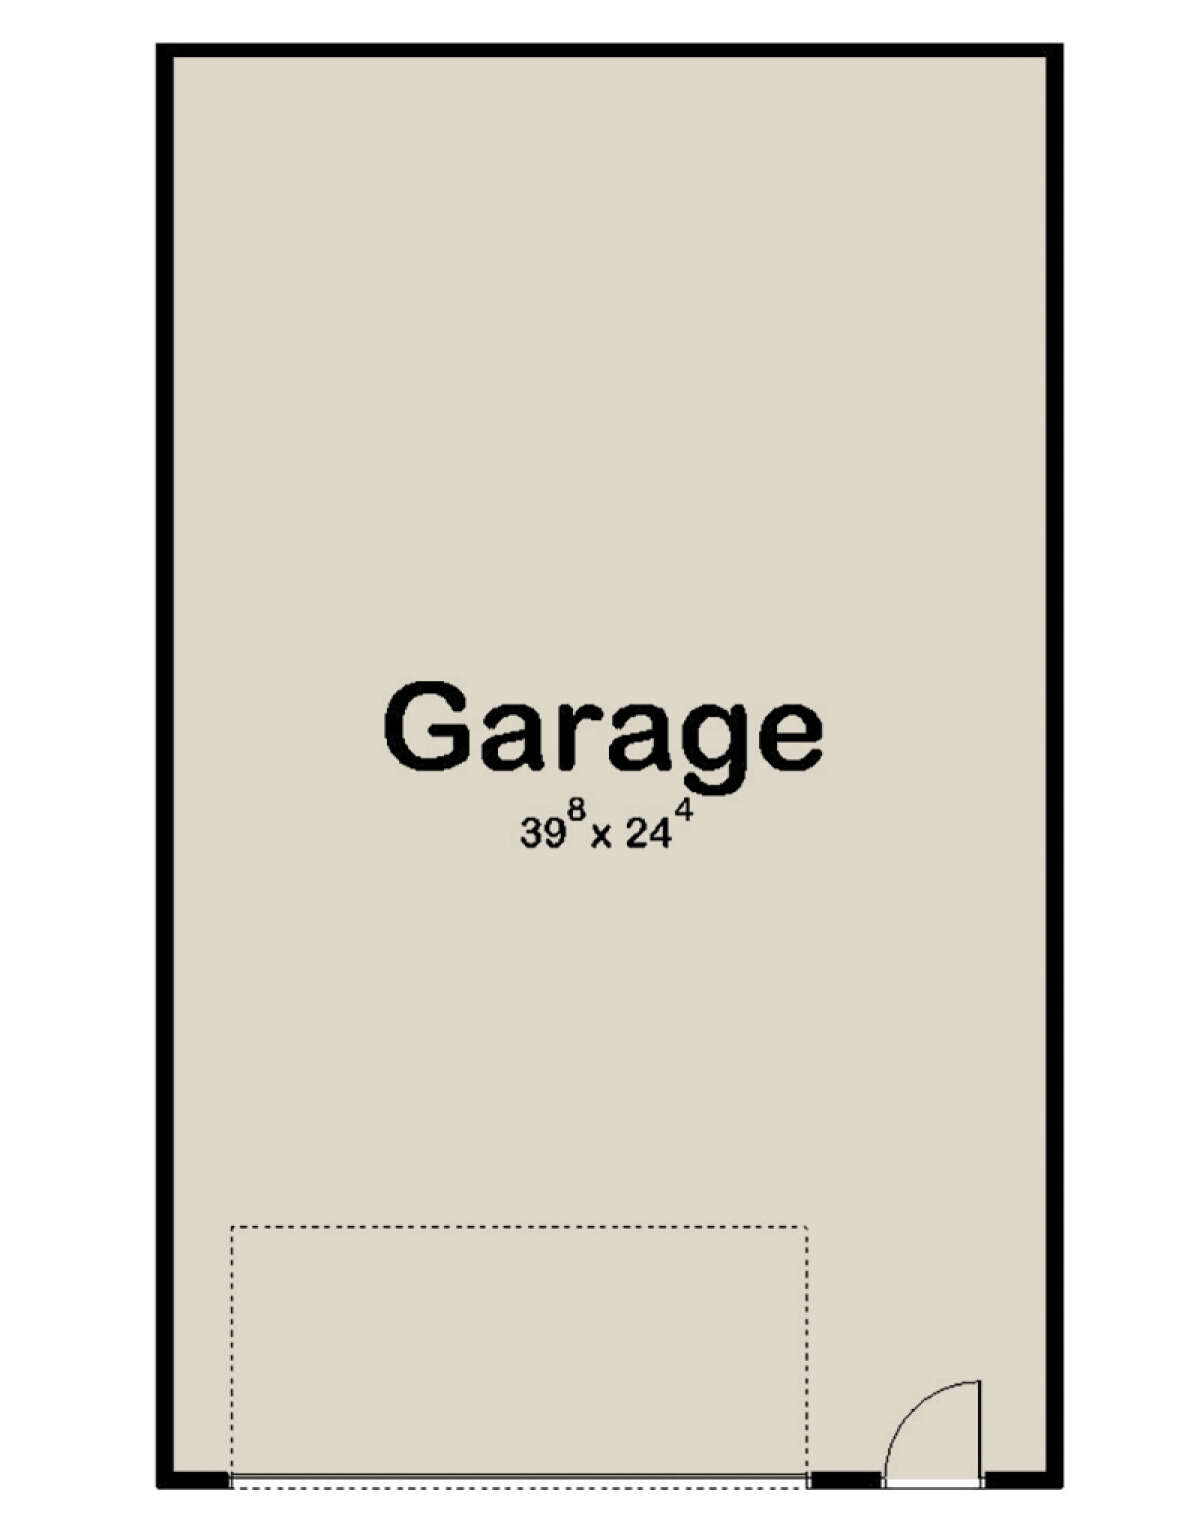 Garage Floor for House Plan #963-00521